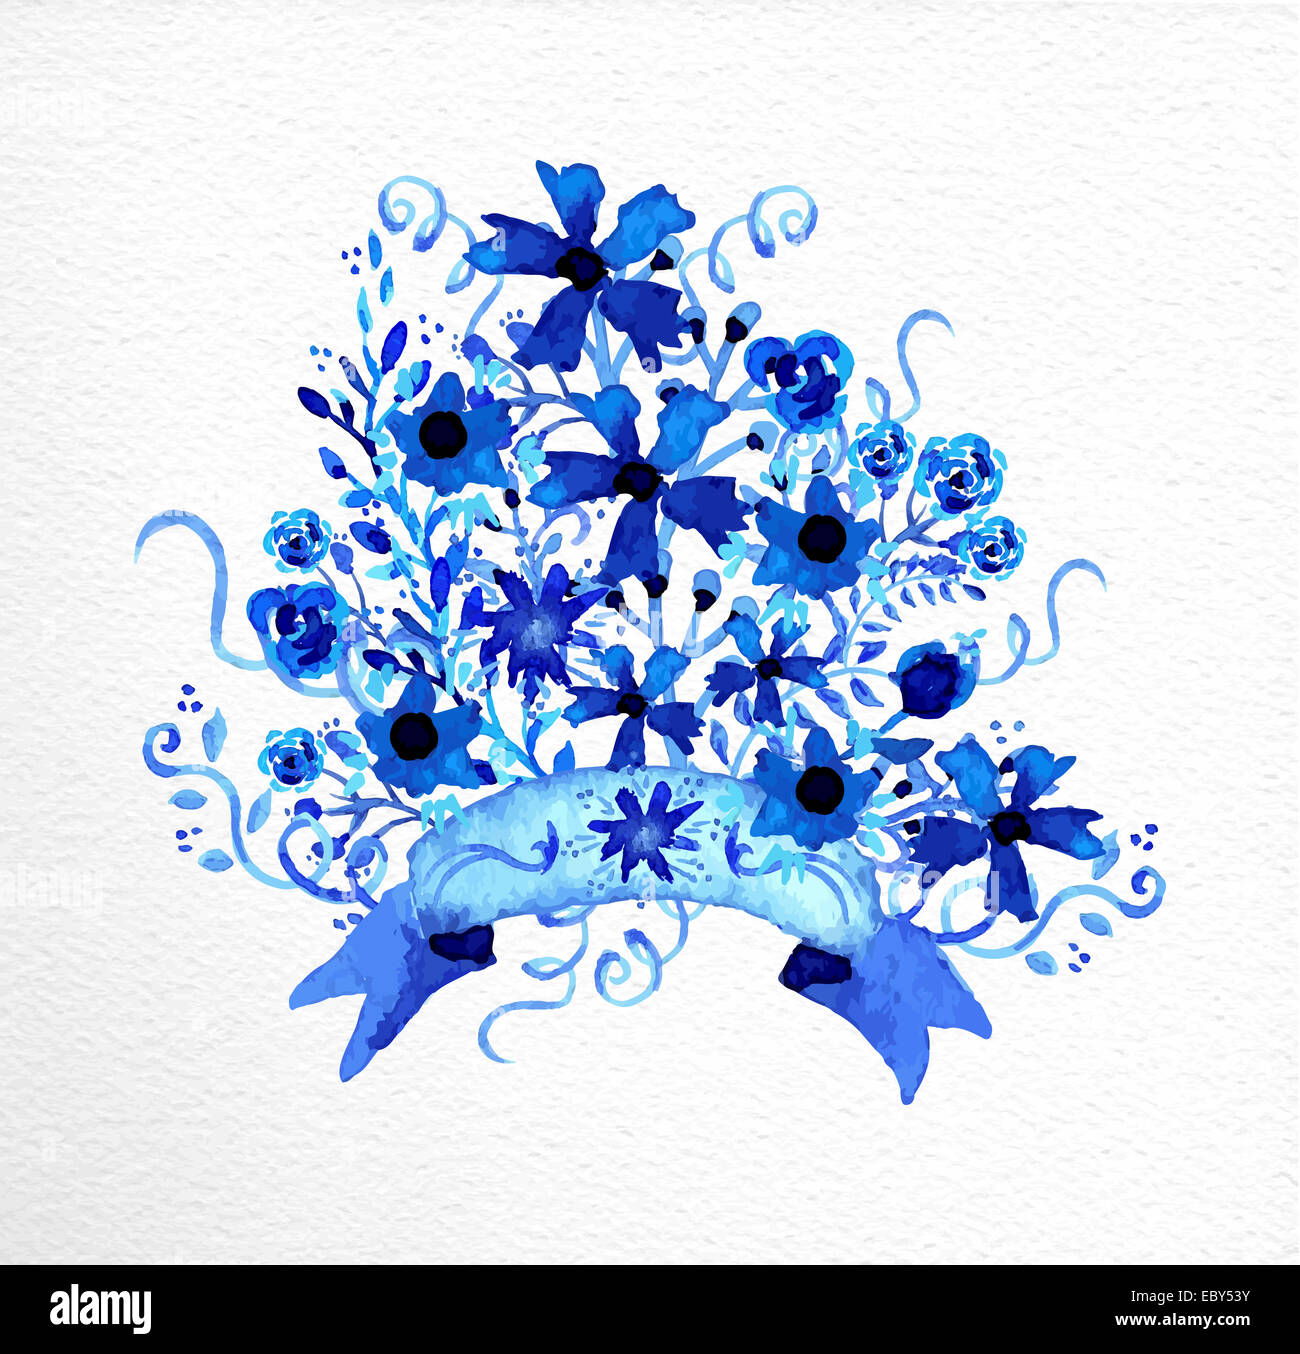 Bouquet de fleurs à la main à l'aquarelle en bleu. Idéal pour la saint valentin, un mariage, Noël et la fête des mères, carte de souhaits. EPS10 vec Banque D'Images